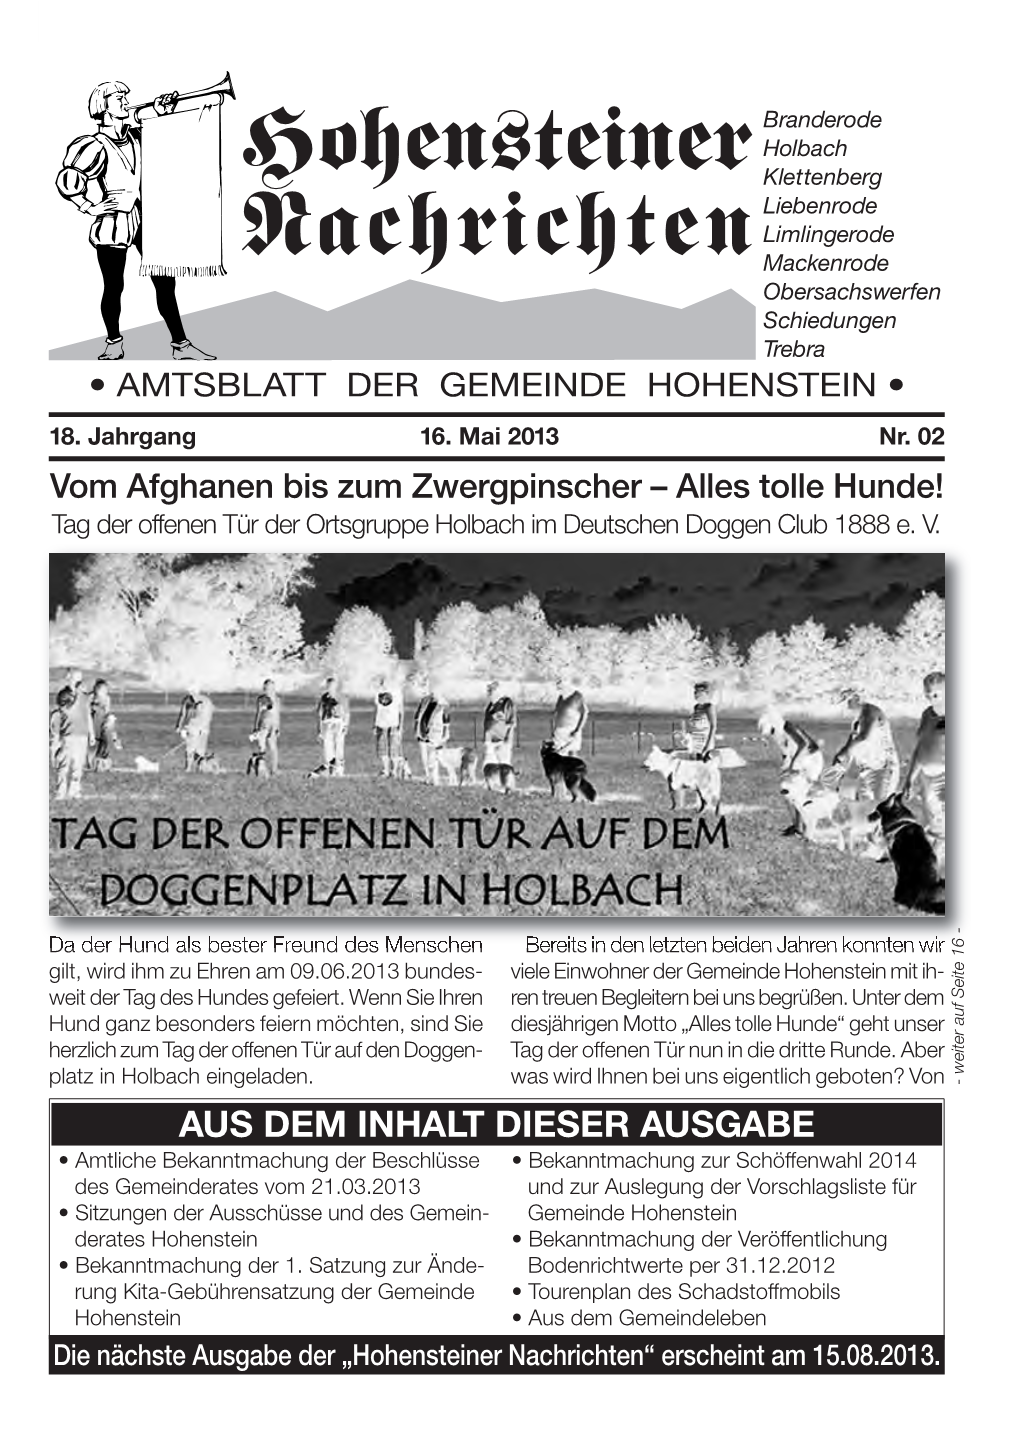 Hohensteiner Nachrichten“ Erscheint Am 15.08.2013